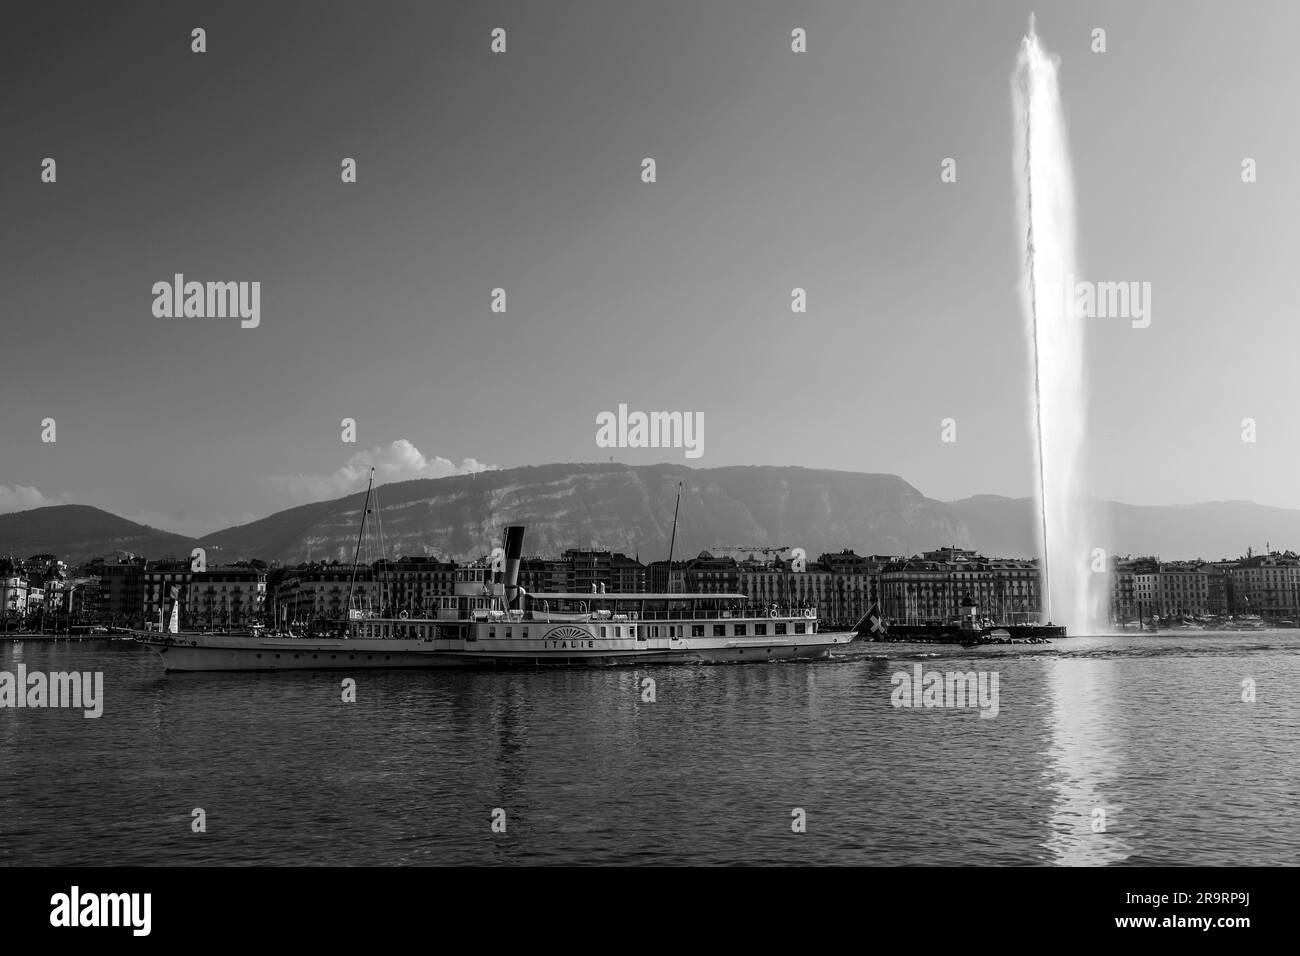 Genf, Schweiz - 25. März 2022: Der Jet d'Eau ist ein großer Brunnen in Genf, Schweiz und eines der berühmtesten Wahrzeichen der Stadt. Stockfoto